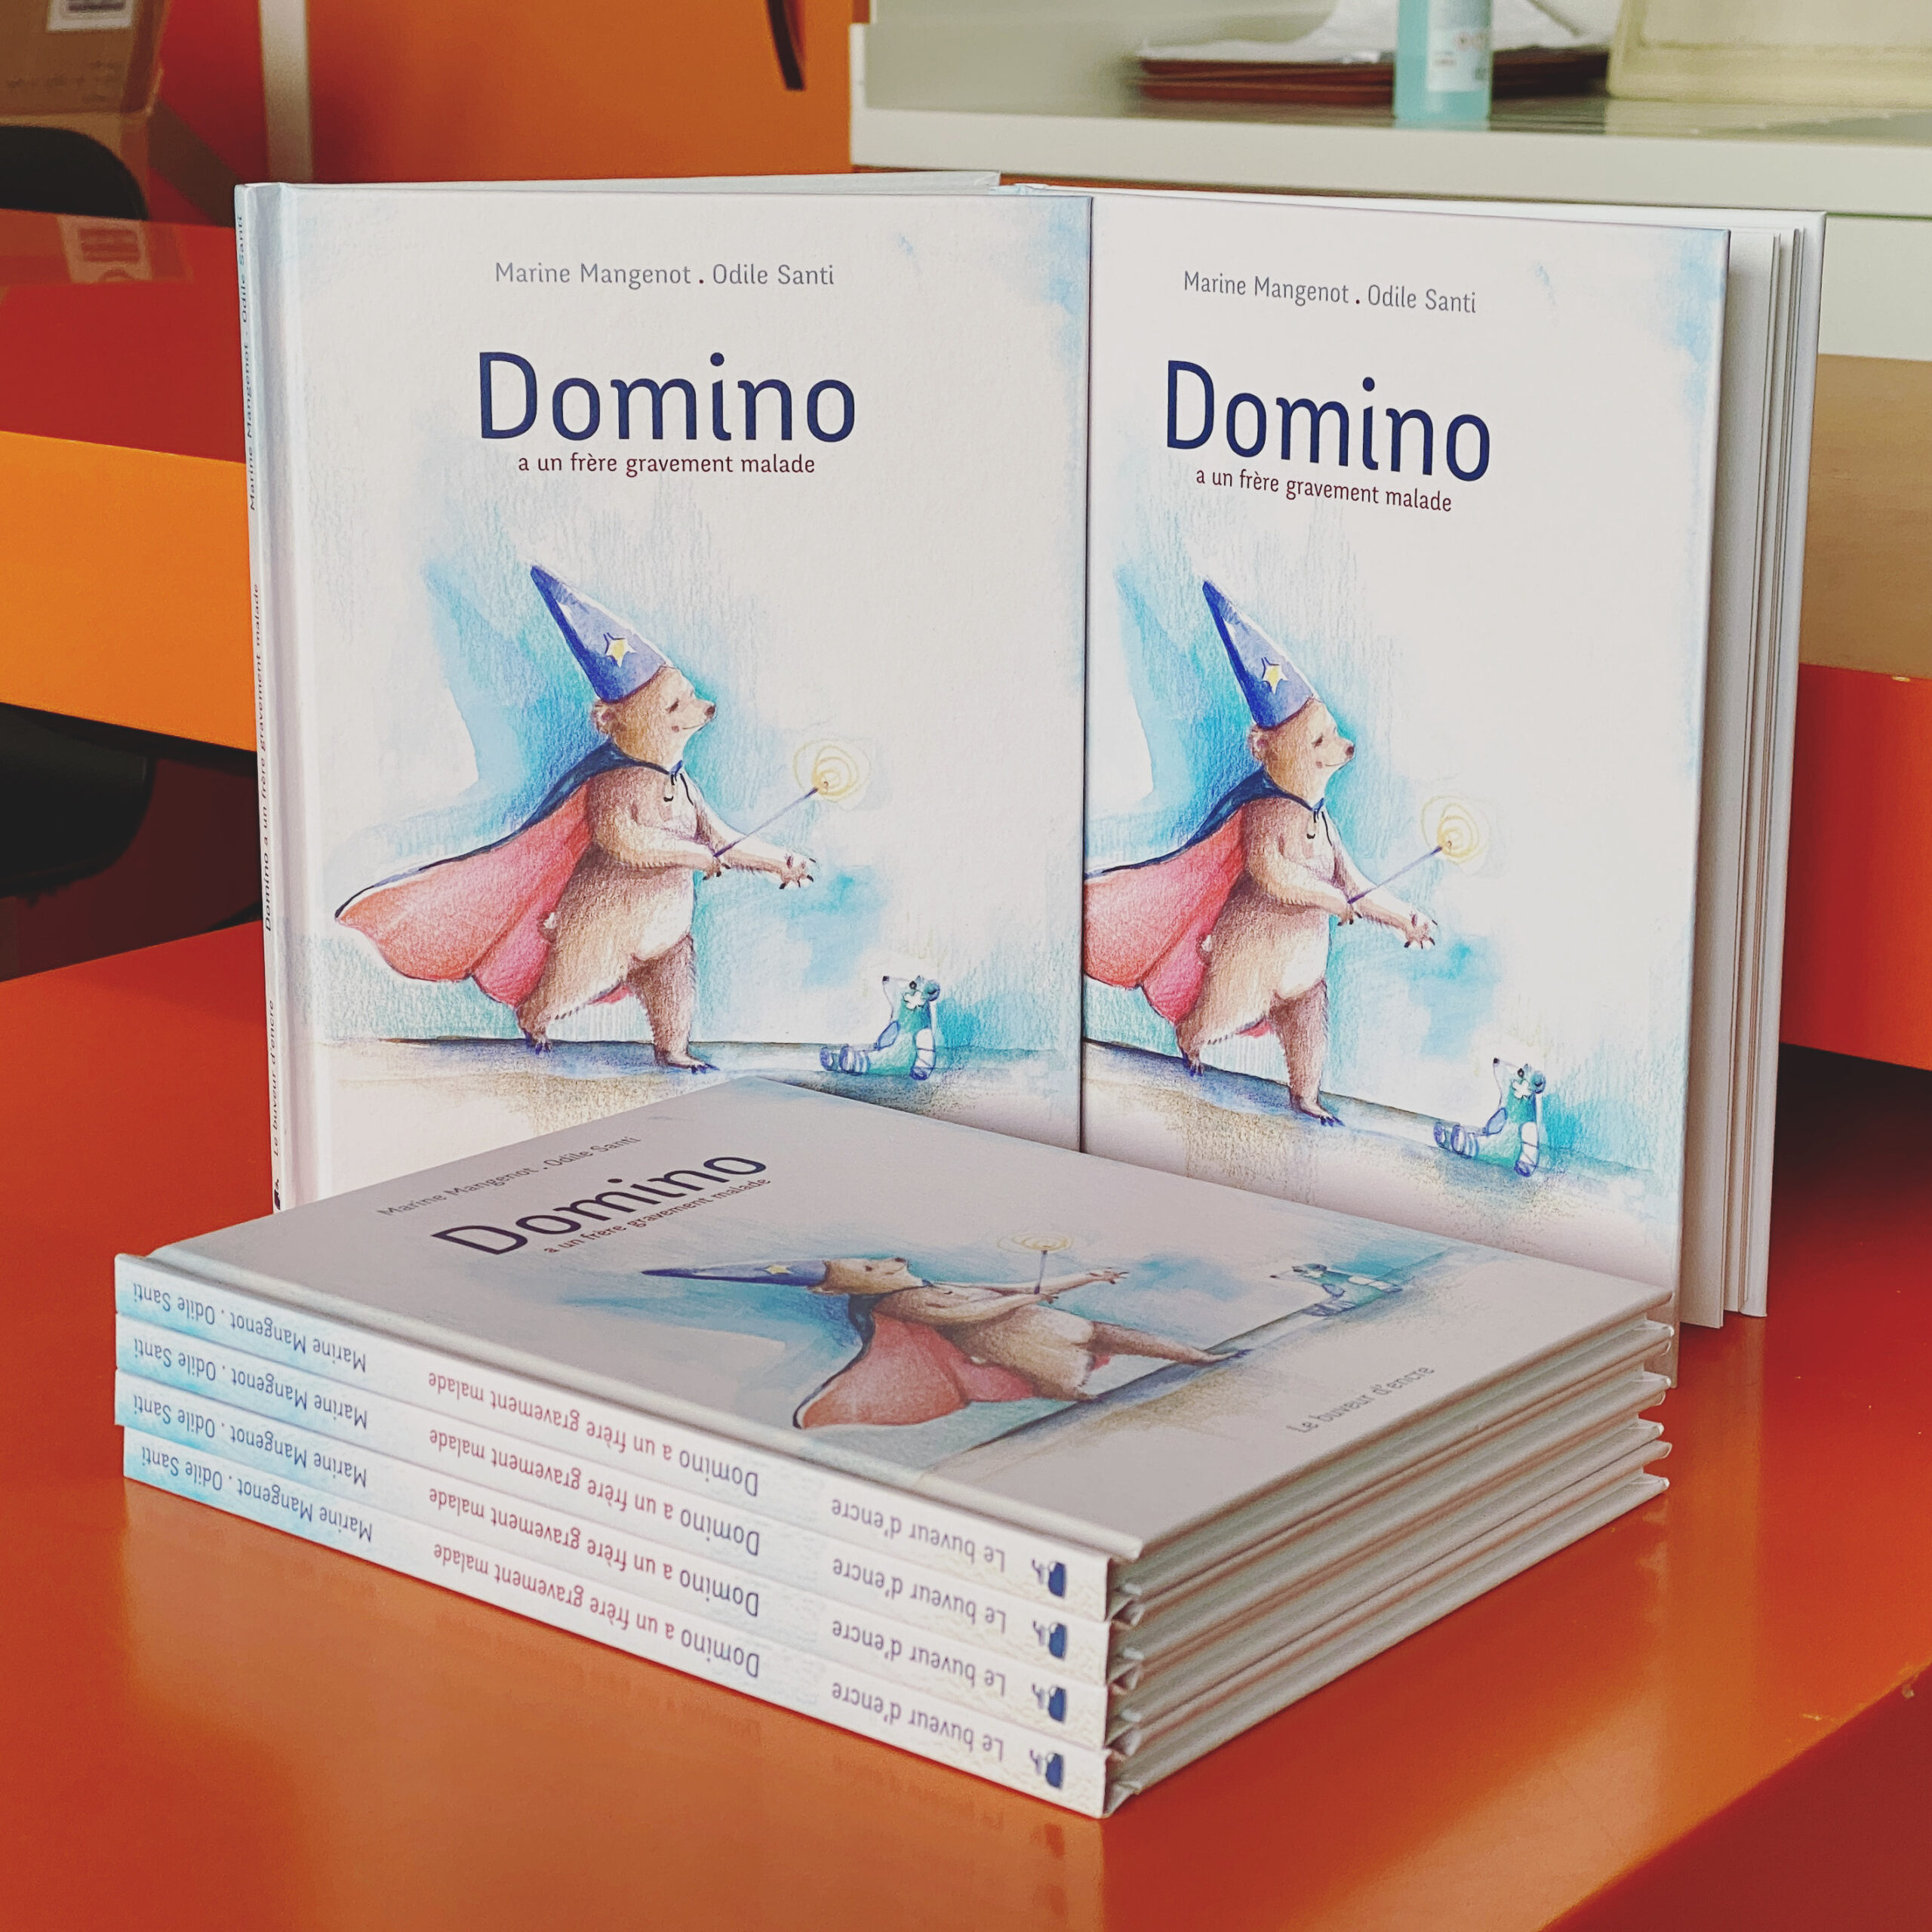 Exemplaires du livre « Domino a un frère gravement malade » achetés par l'association pour aider les familles à appréhender la maladie de leurs proches.